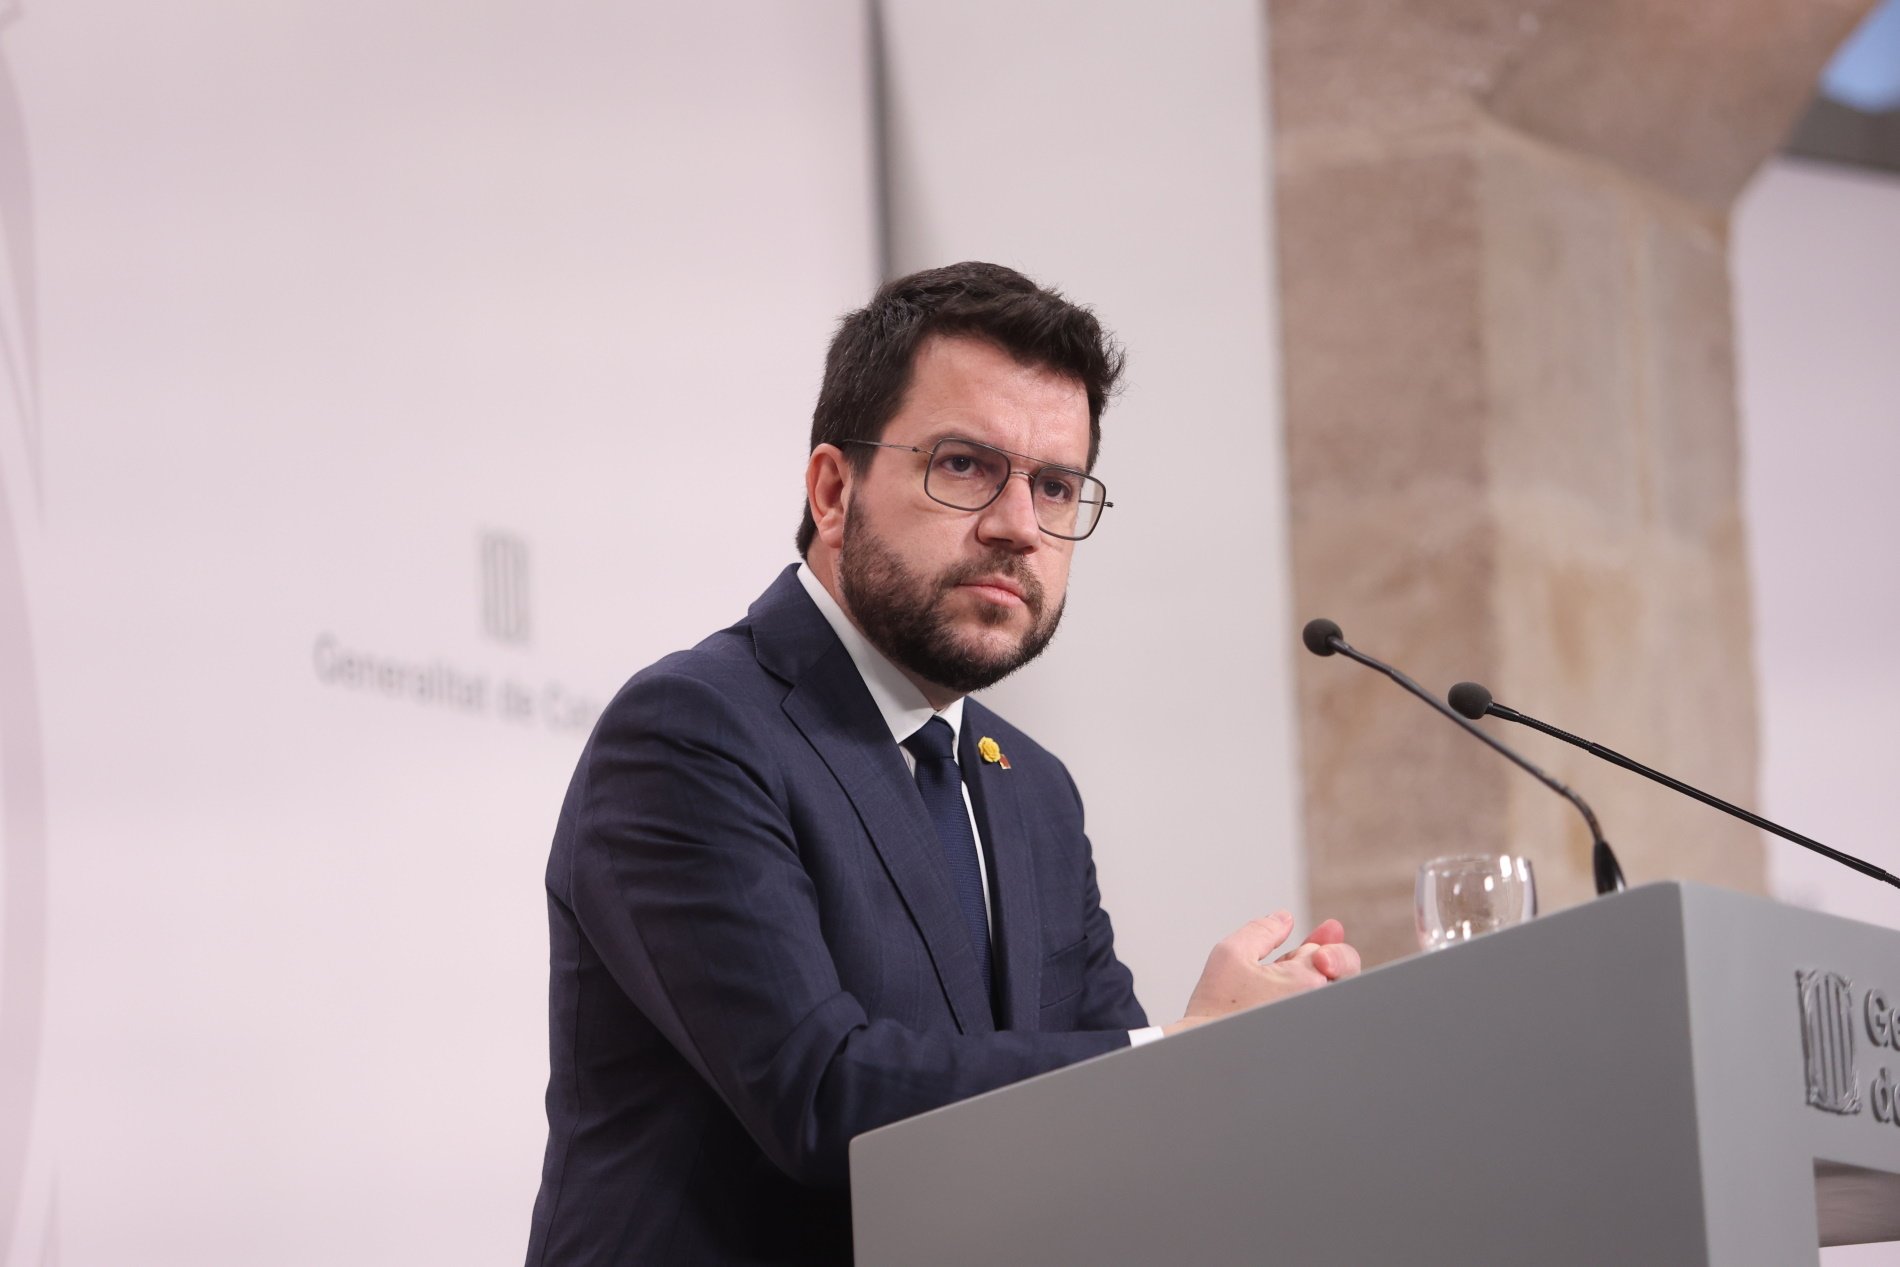 La compareixença d'Aragonès al Parlament per la reforma del Codi Penal, congelada dos mesos després